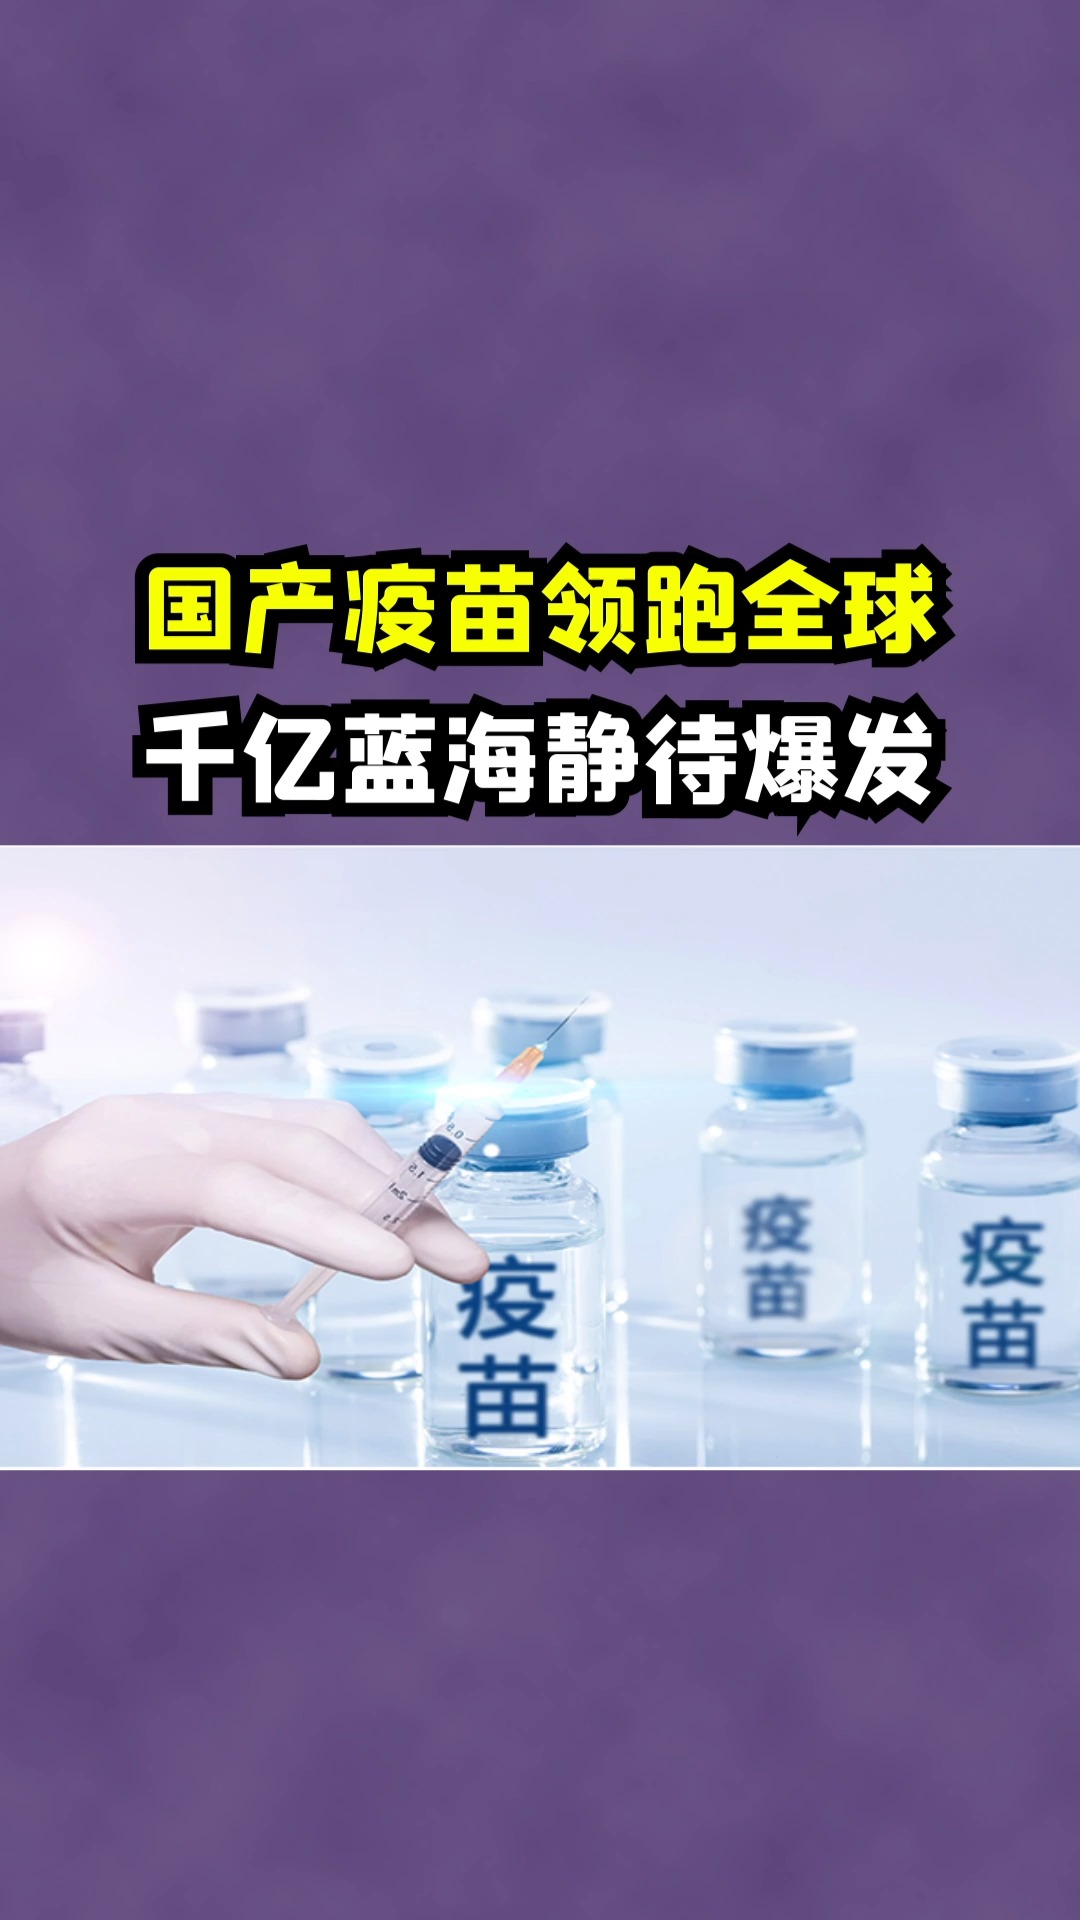 中国新冠疫苗研发国际领跑,底气来自哪儿